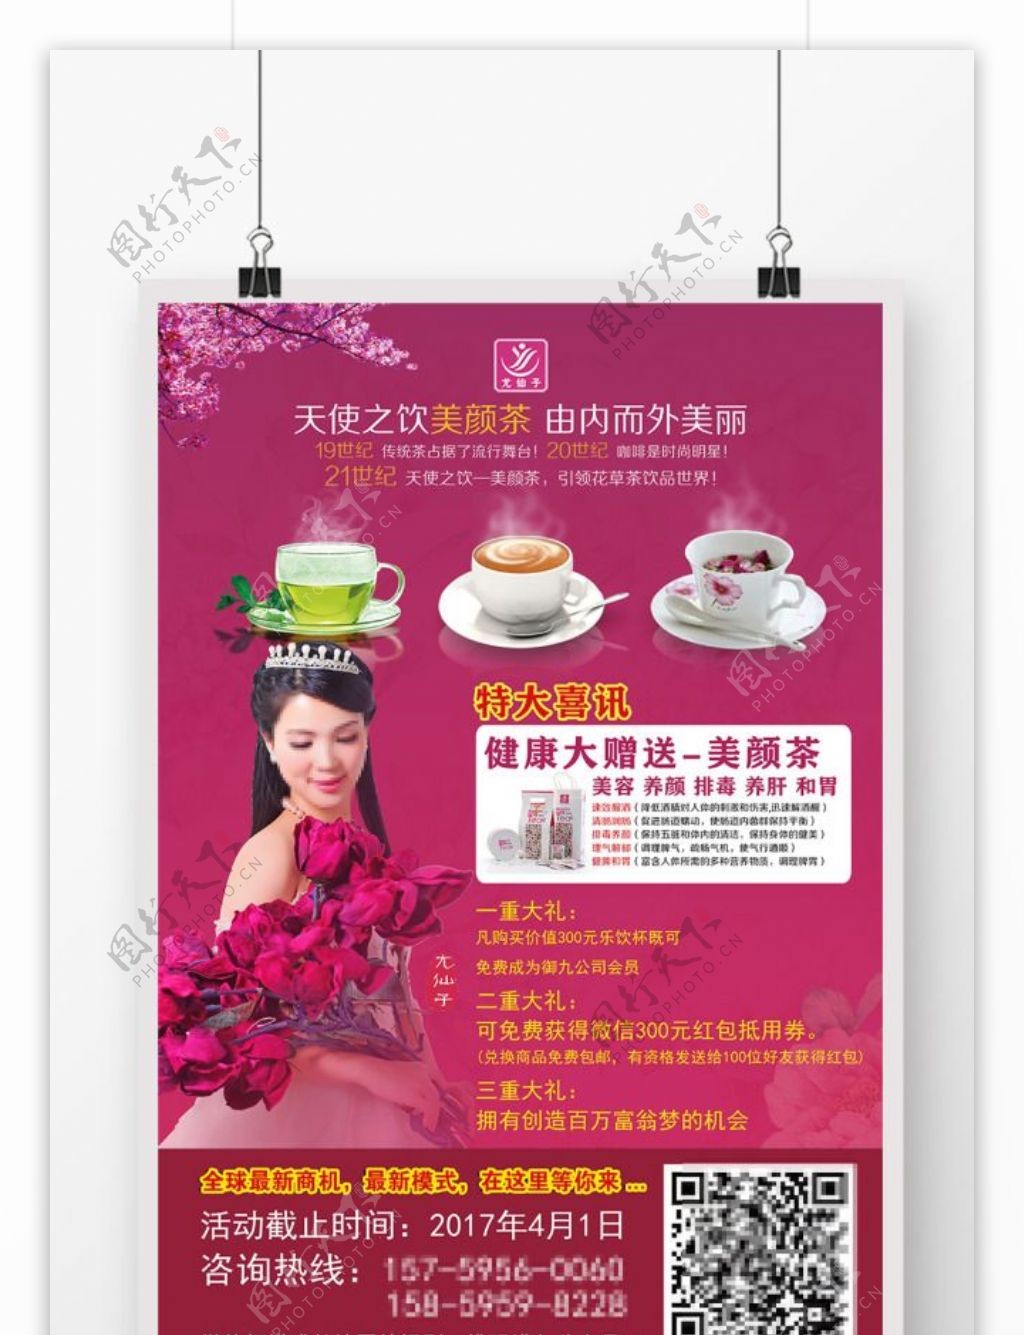 健康养生尤仙子天使之饮美颜茶宣传单海报